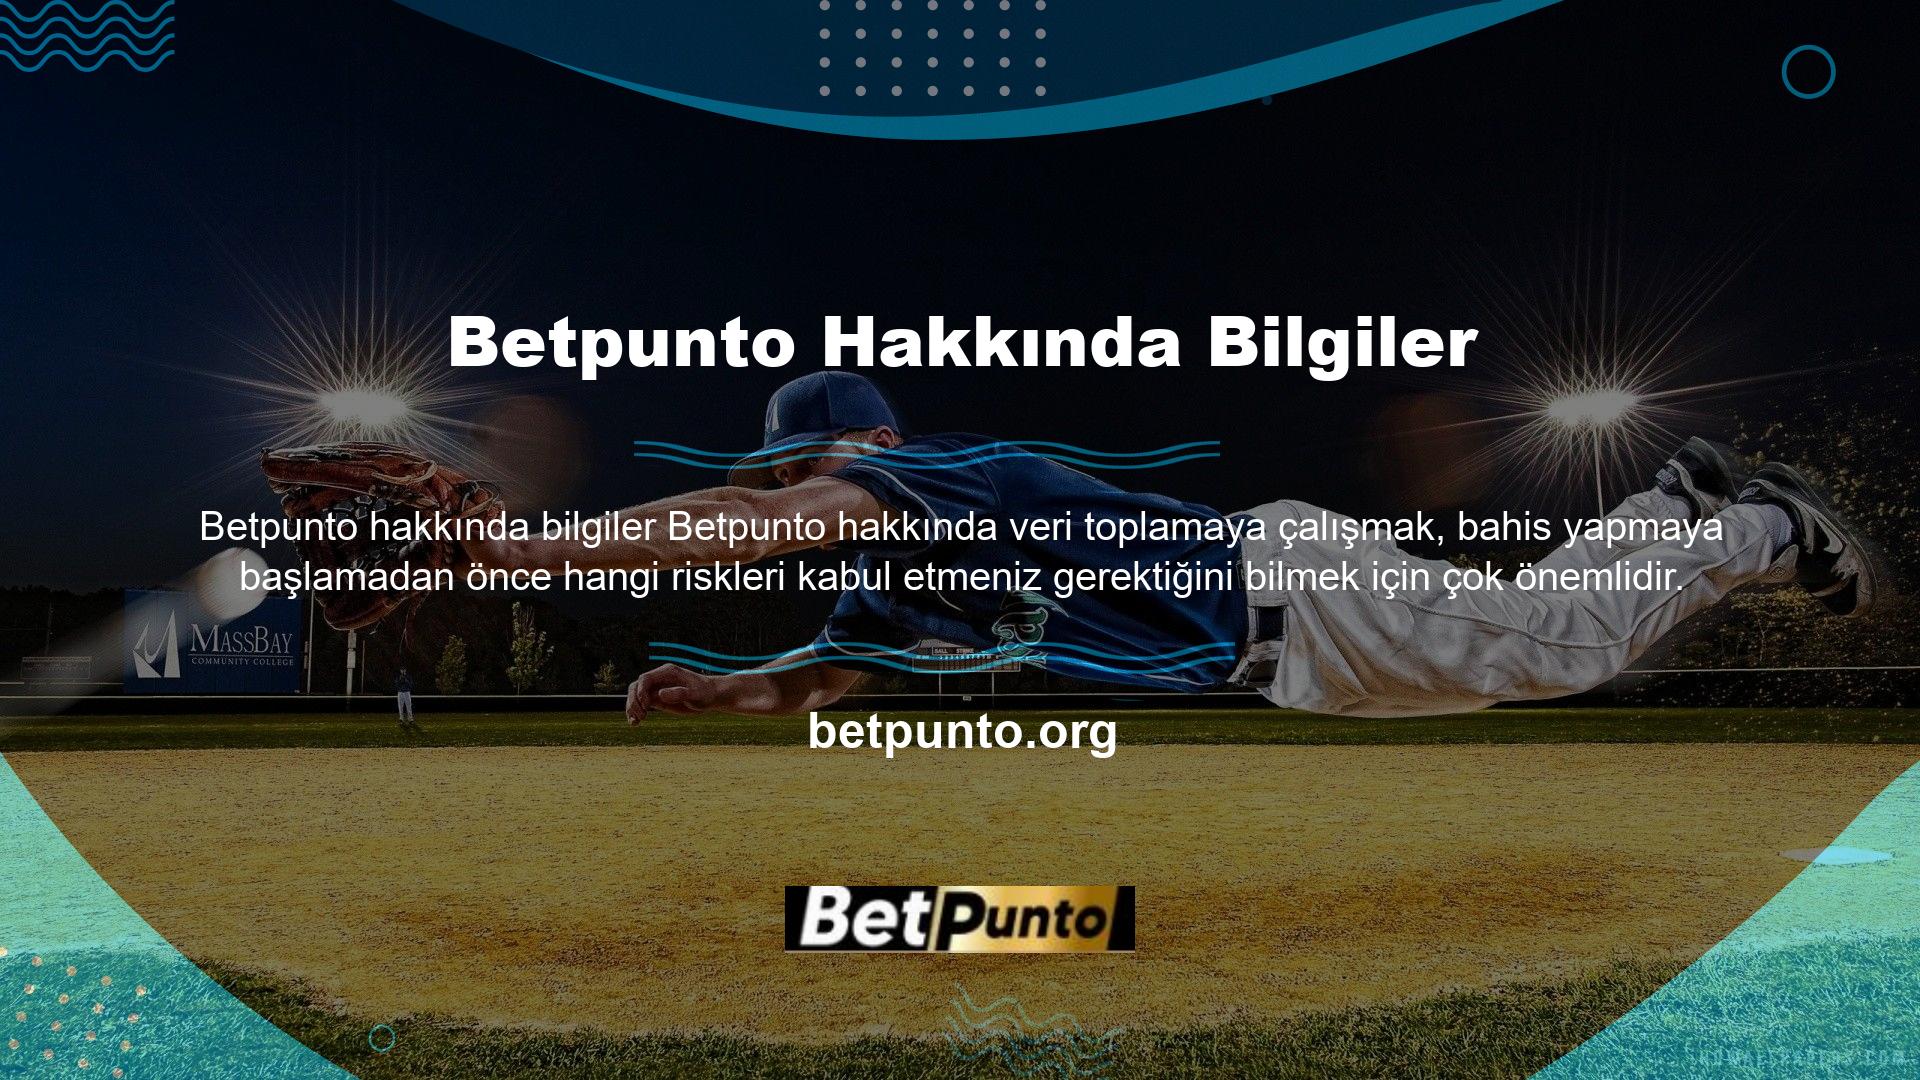 Bu amaçla, bu web sitesinde kullanıcı yorumlarına yer vererek Betpunto hakkında veri sağlamaya çalışıyoruz